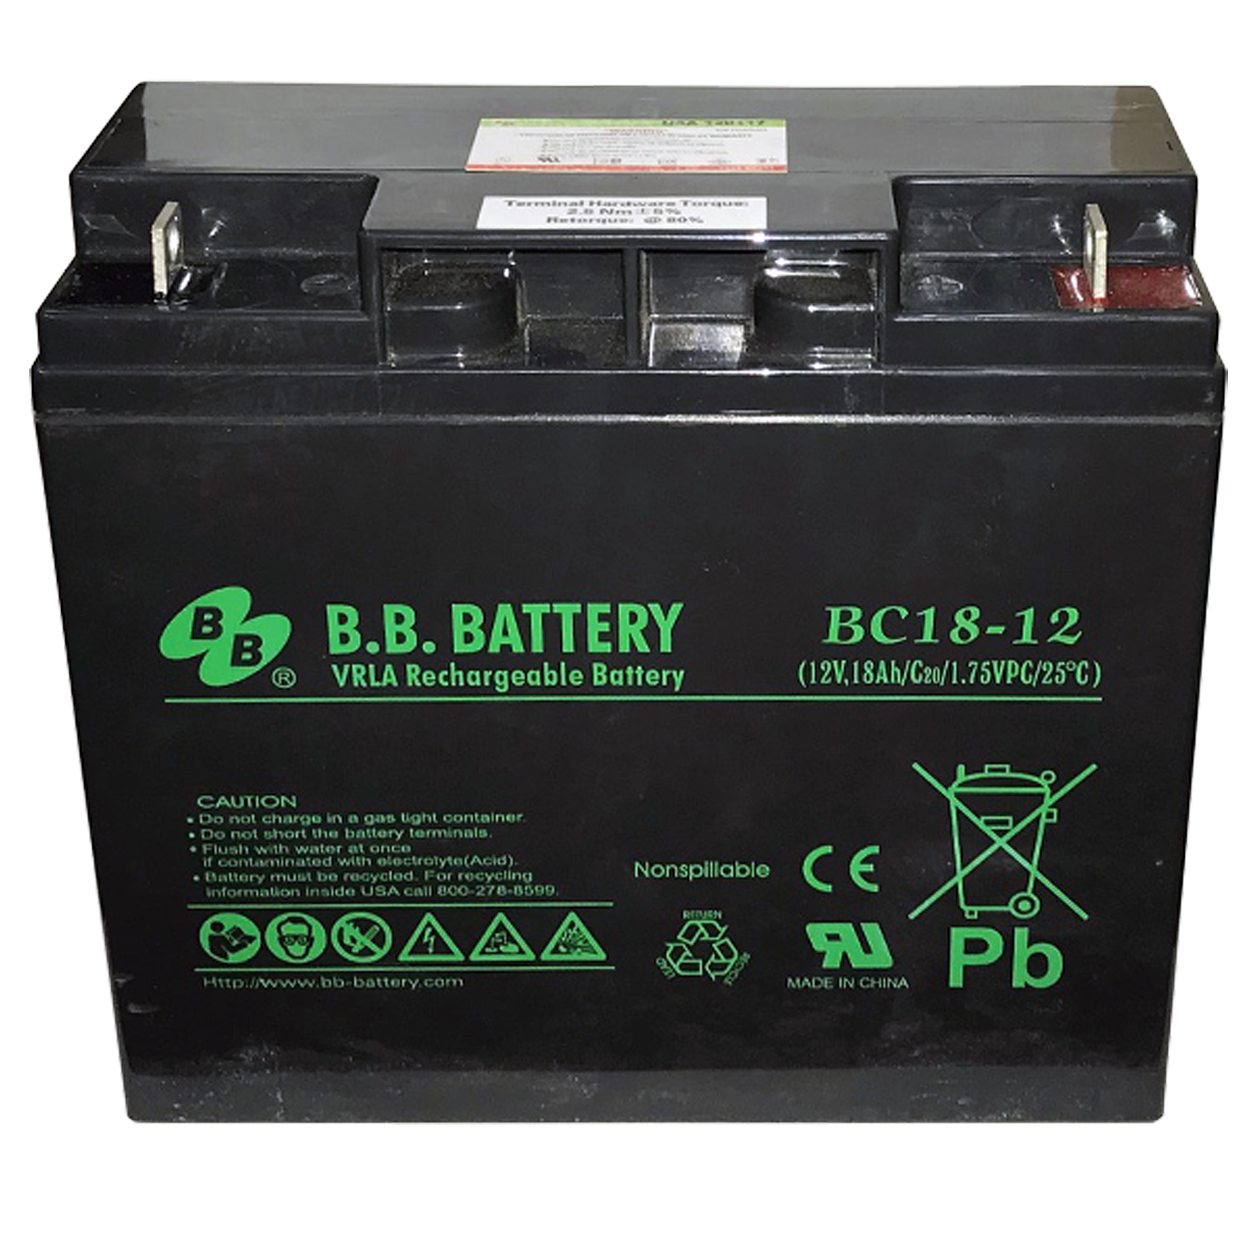 Аккумулятор Yuasa 12v 18ah. B.B.Battery evp20-12fr. B.B. Battery HR 9-12. Аккумуляторы в упс 24 двойные.